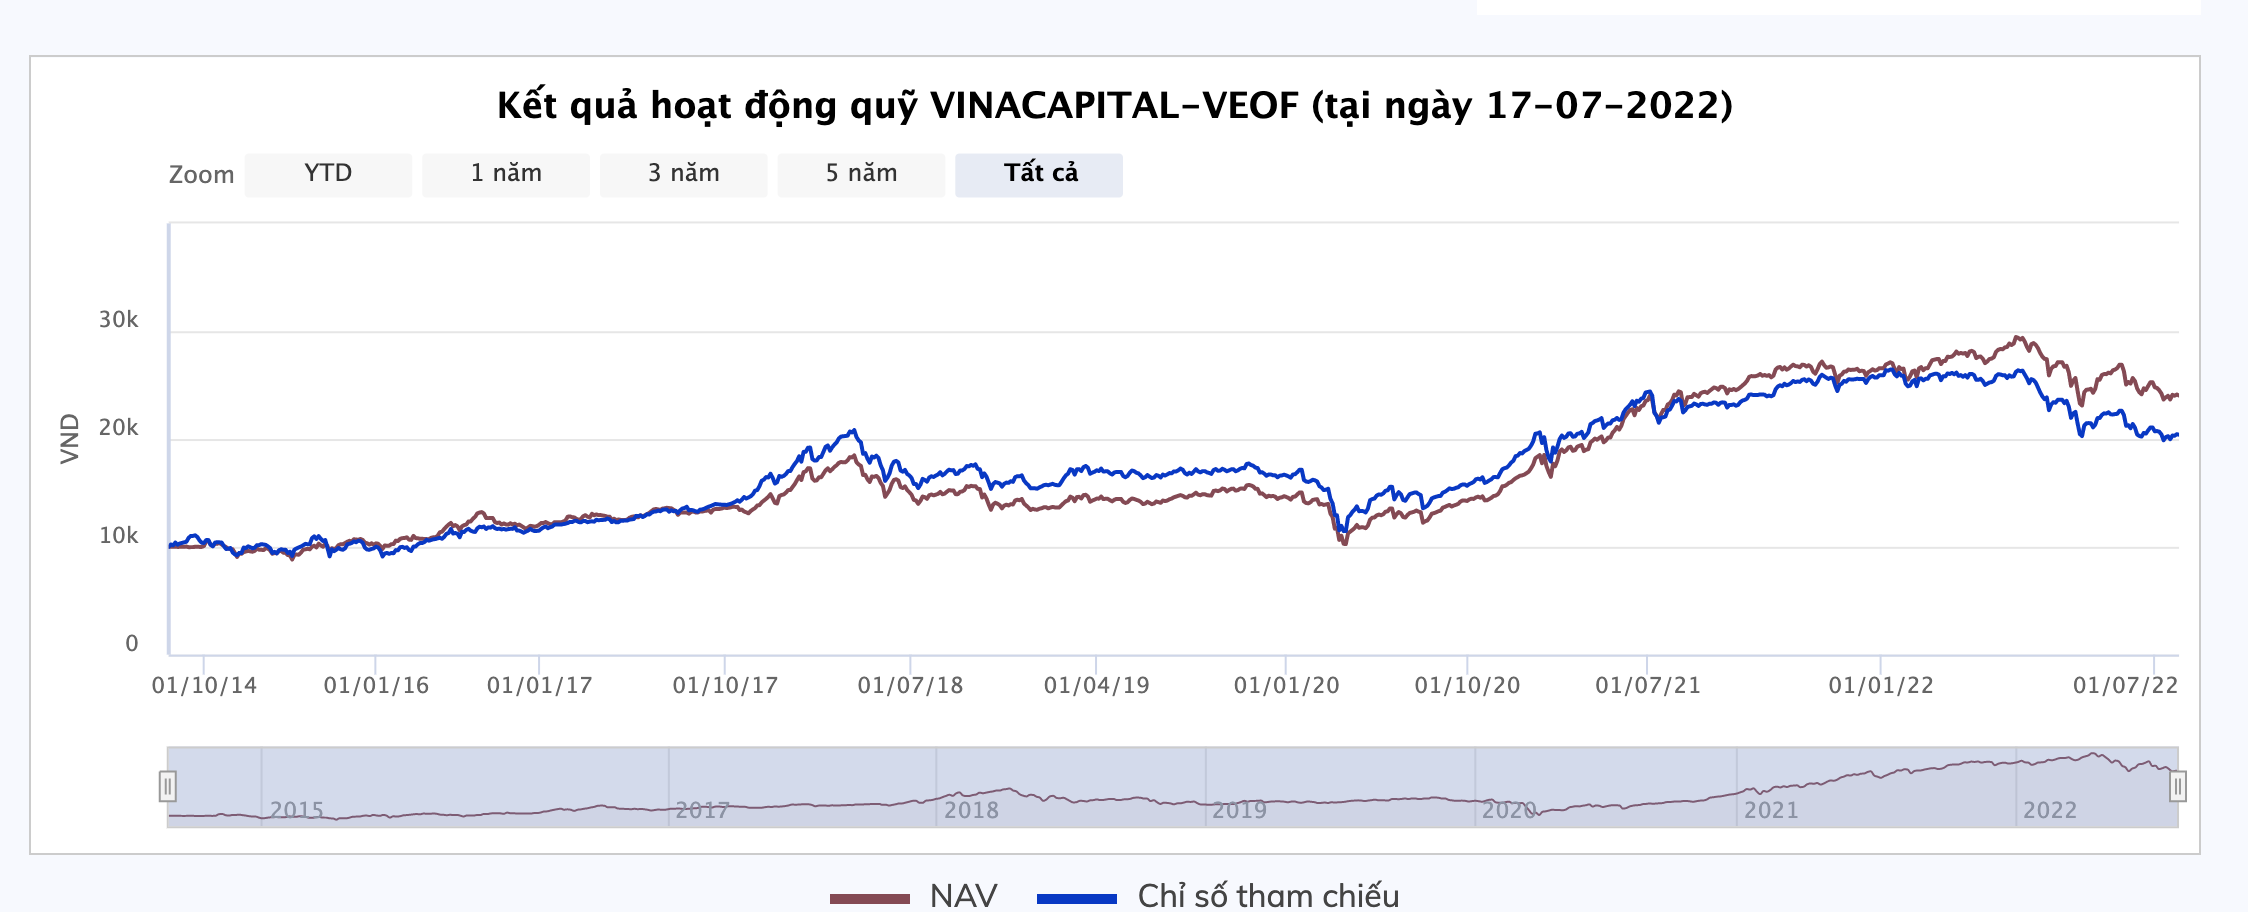 Kết quả hoạt động của quỹ Vinacapital VEOF